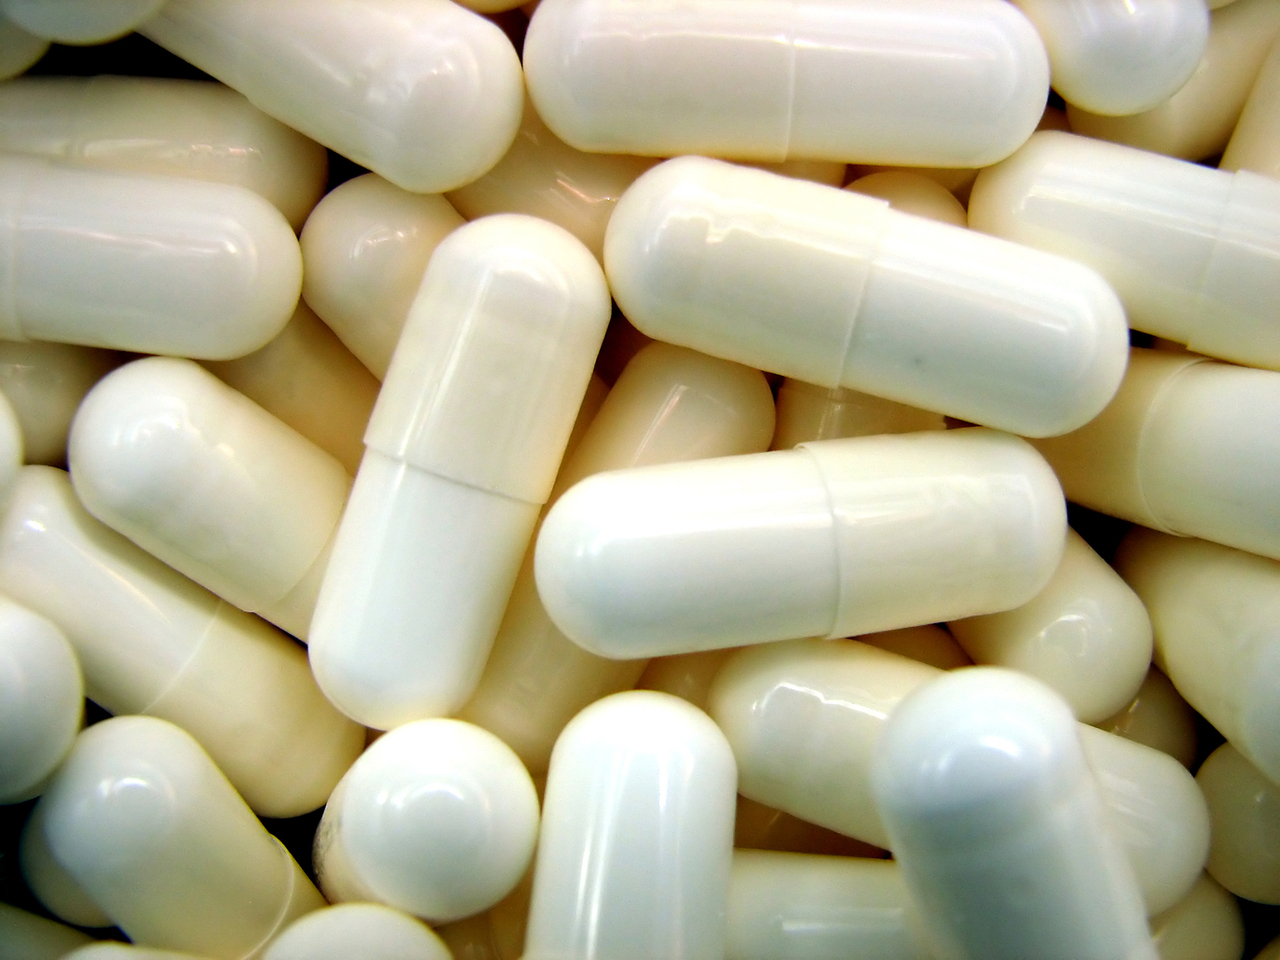  Возможно ли купить антидепрессанты в Анталии без рецепта?